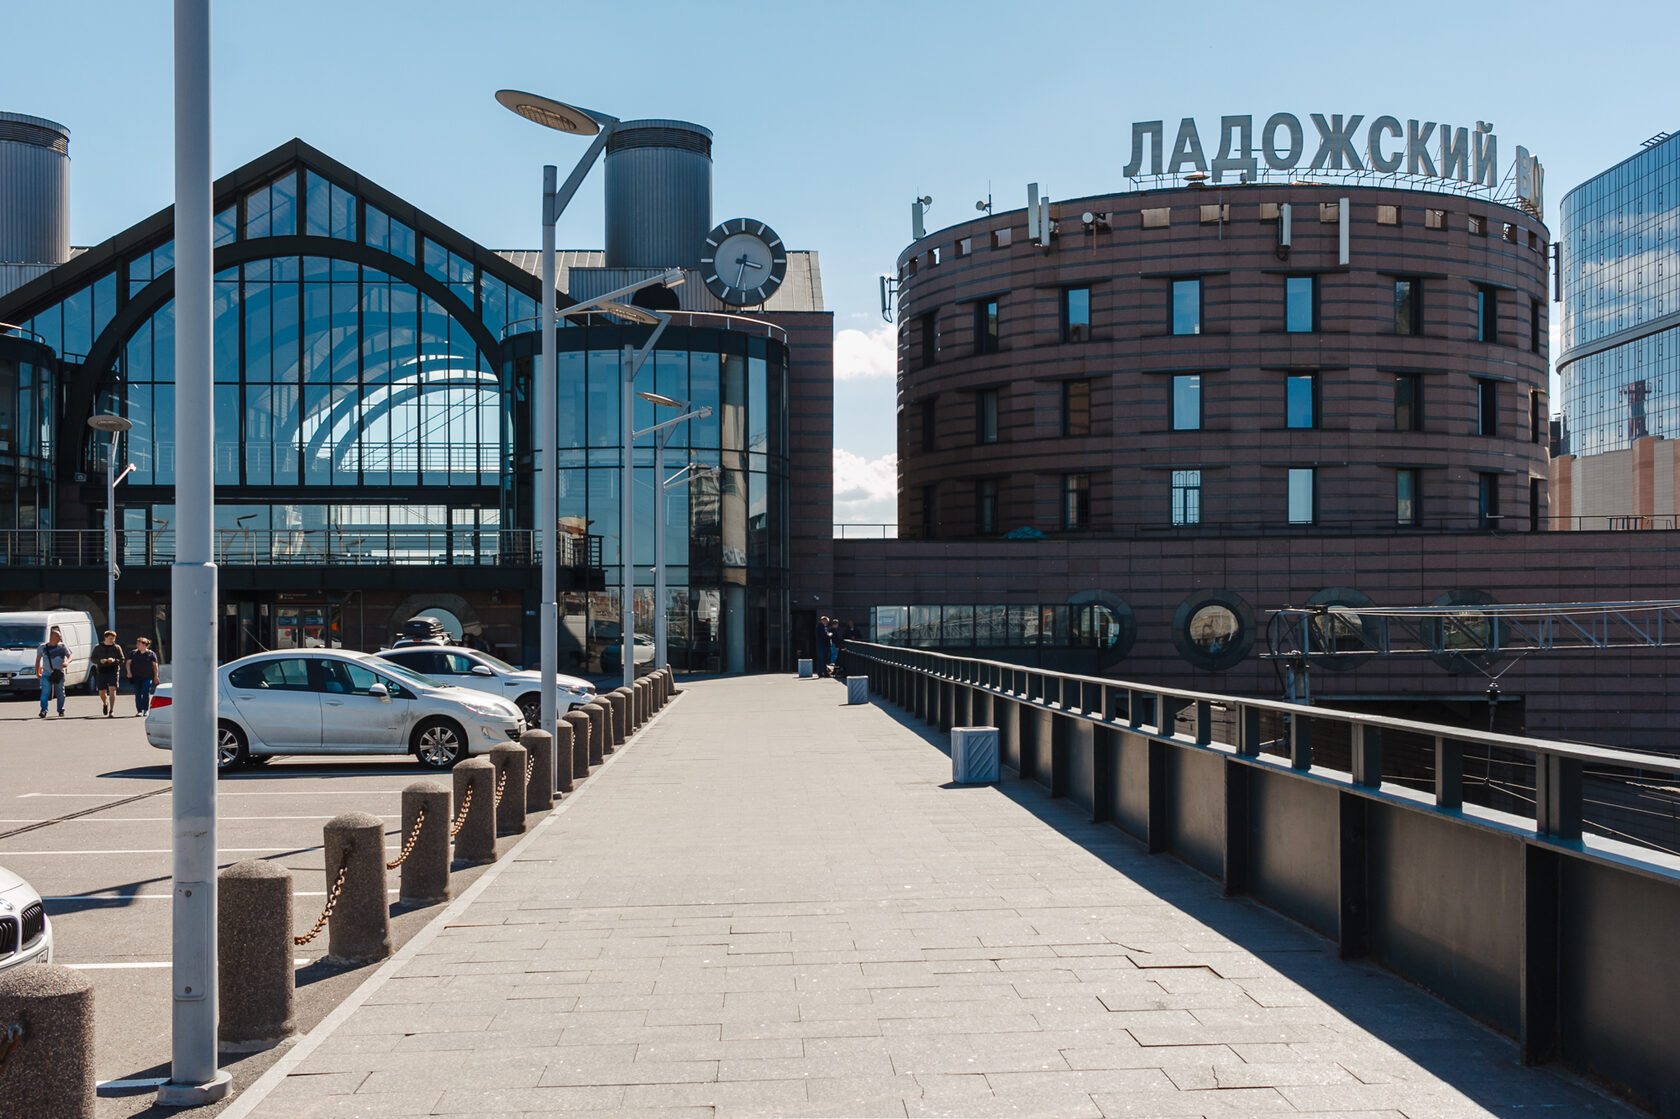 ладожский вокзал санкт петербург фото снаружи